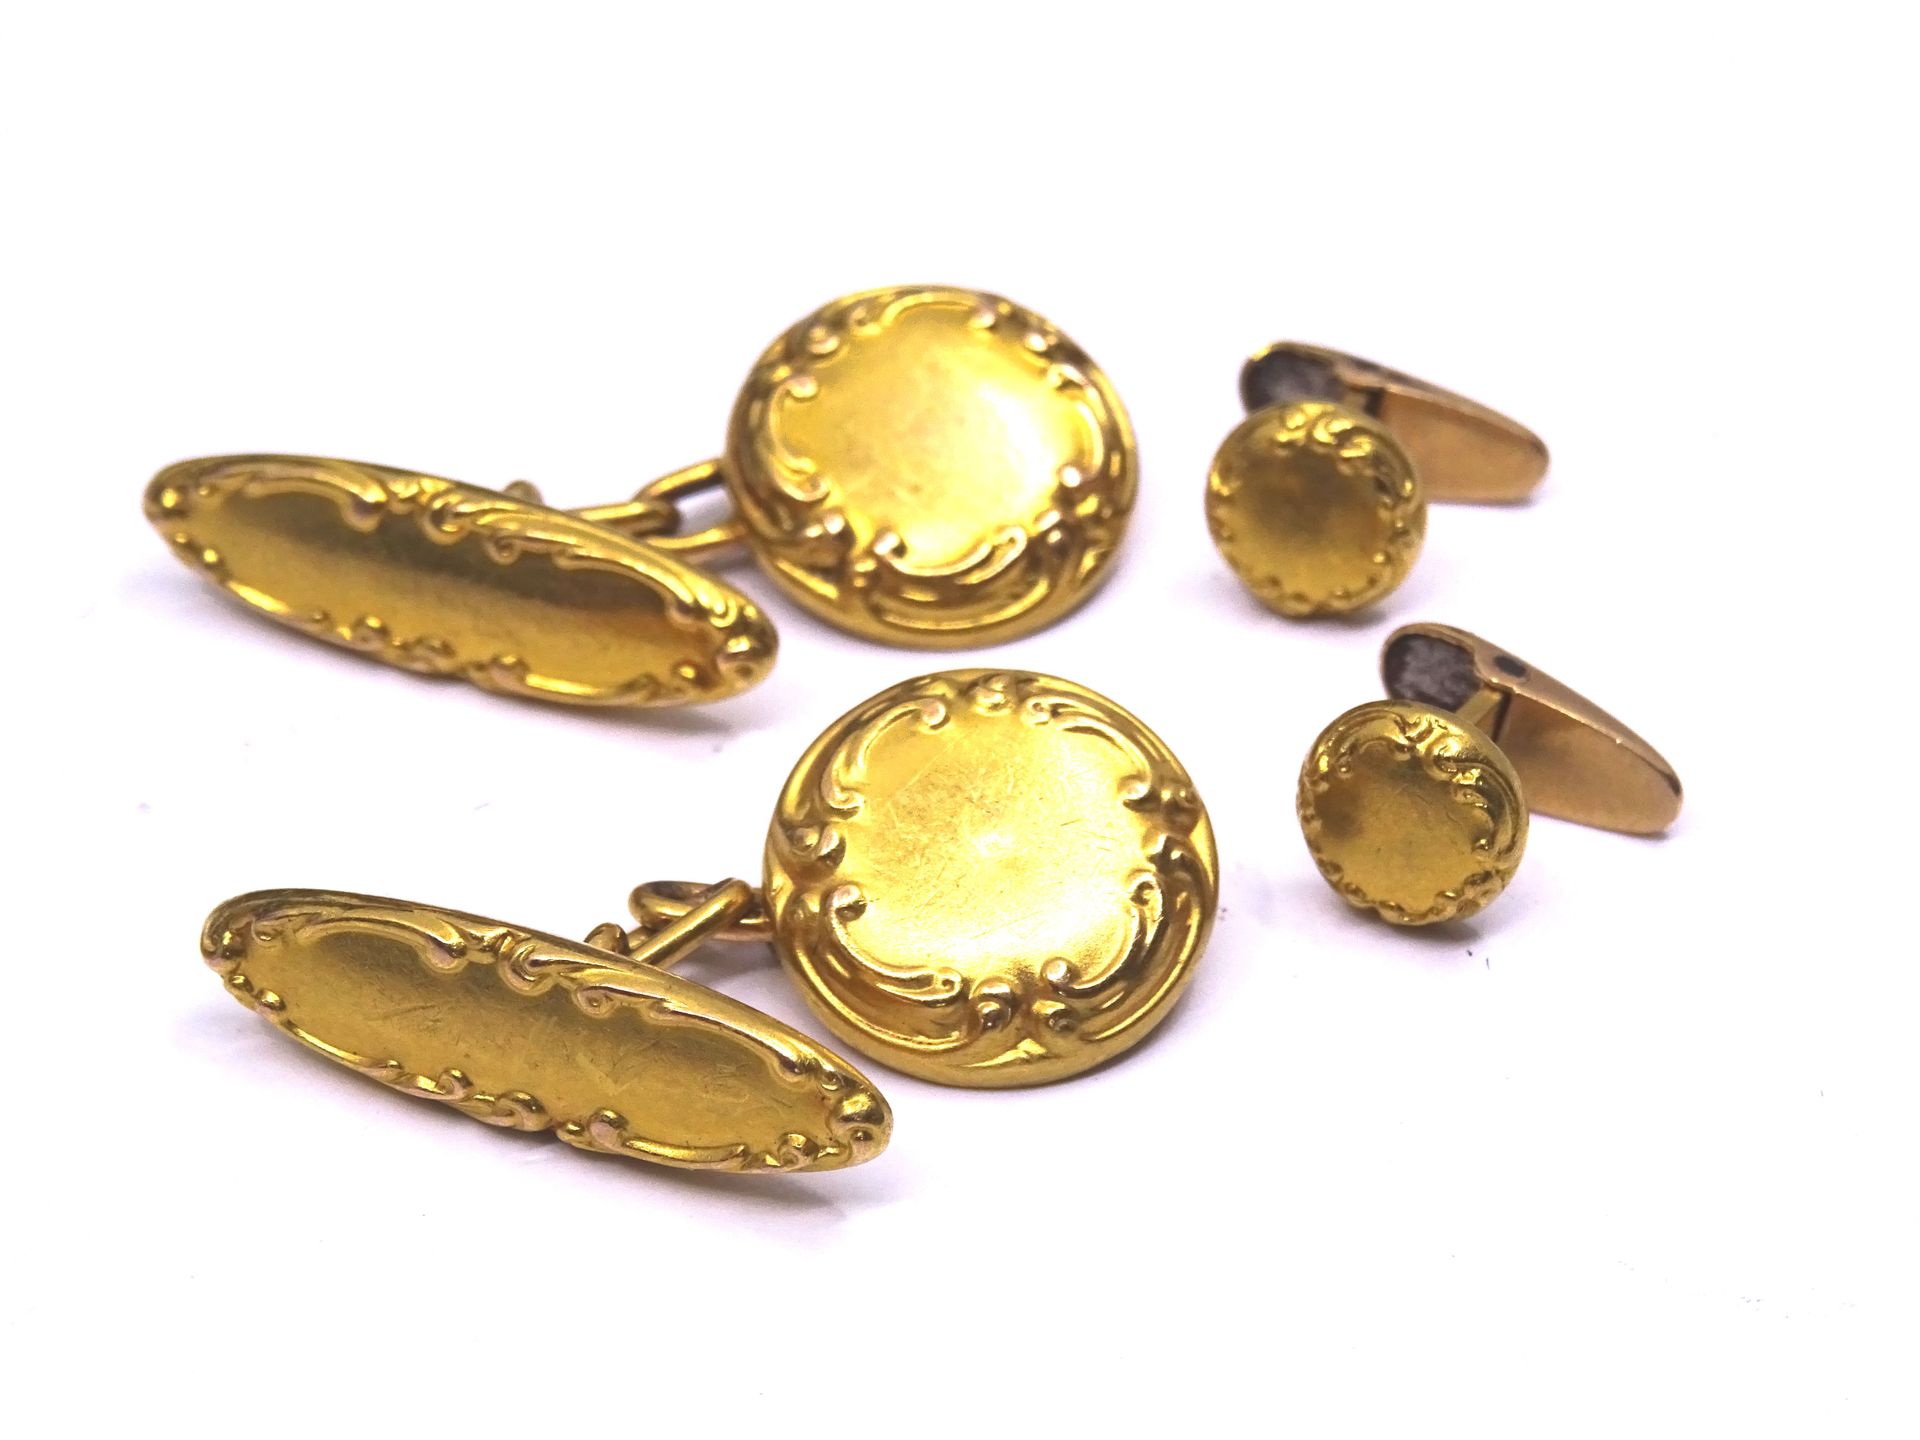 Null 一对袖扣和两颗黄金领扣（千分之七十五）。紫铜变形和修复。鹰头印记。重量：5.2 克